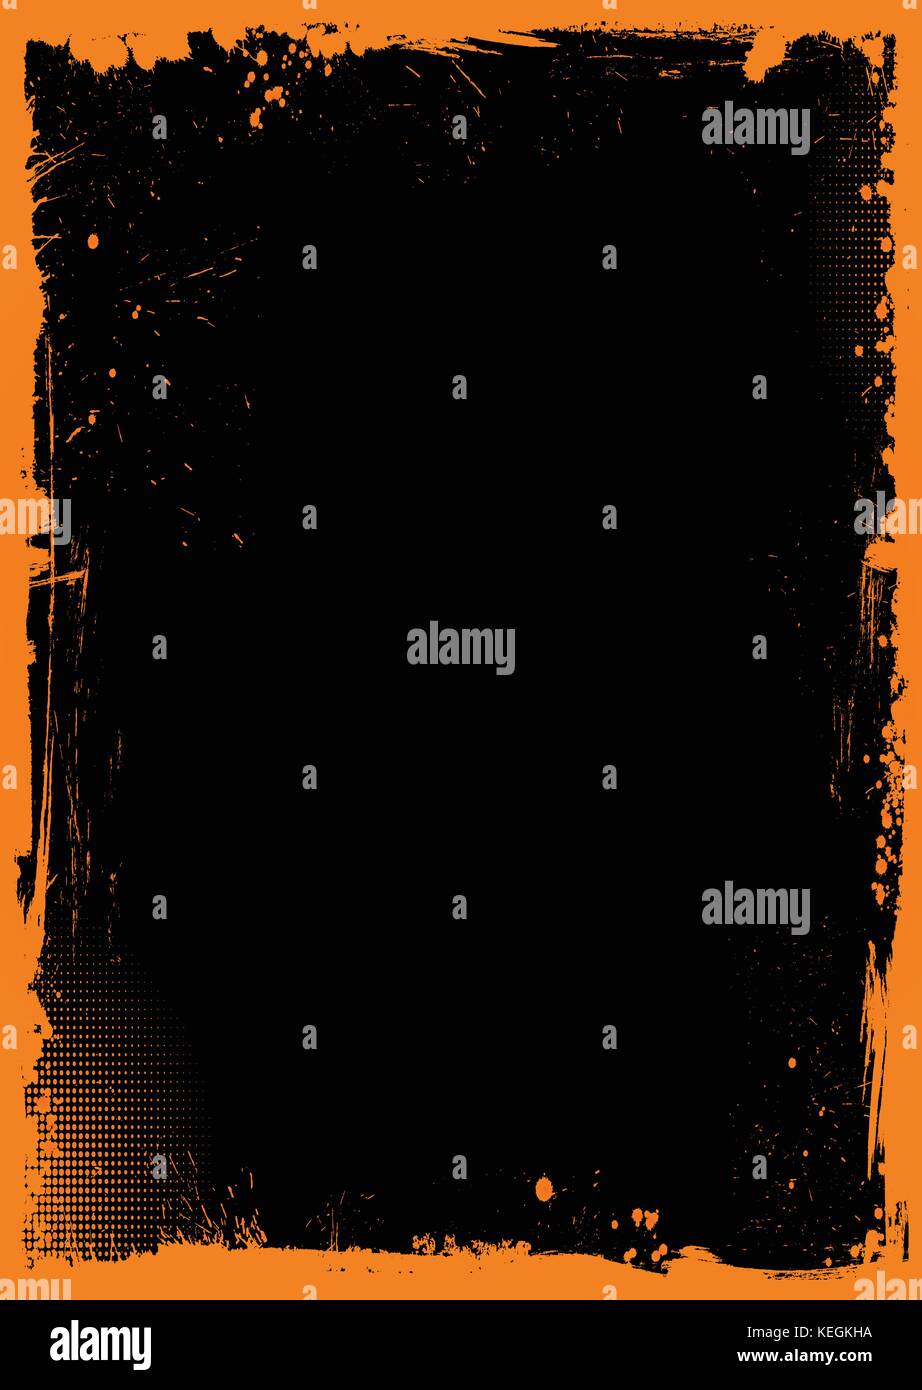 La verticale de l'halloween orange et noir avec bordure grunge background Illustration de Vecteur